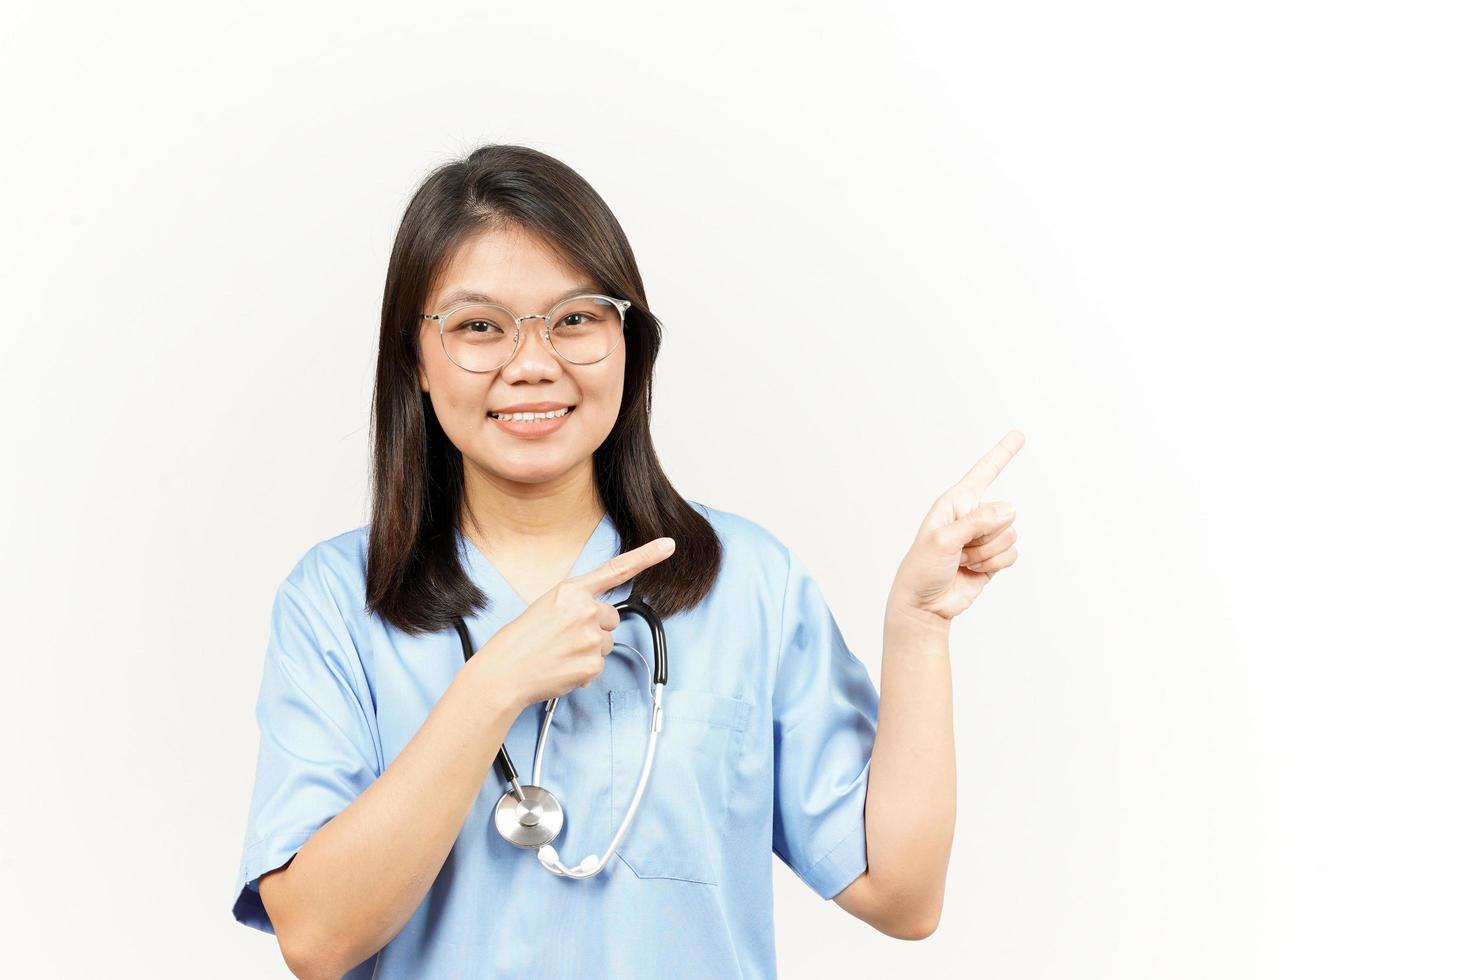 demostración producto y señalando lado de asiático joven médico aislado en blanco antecedentes foto